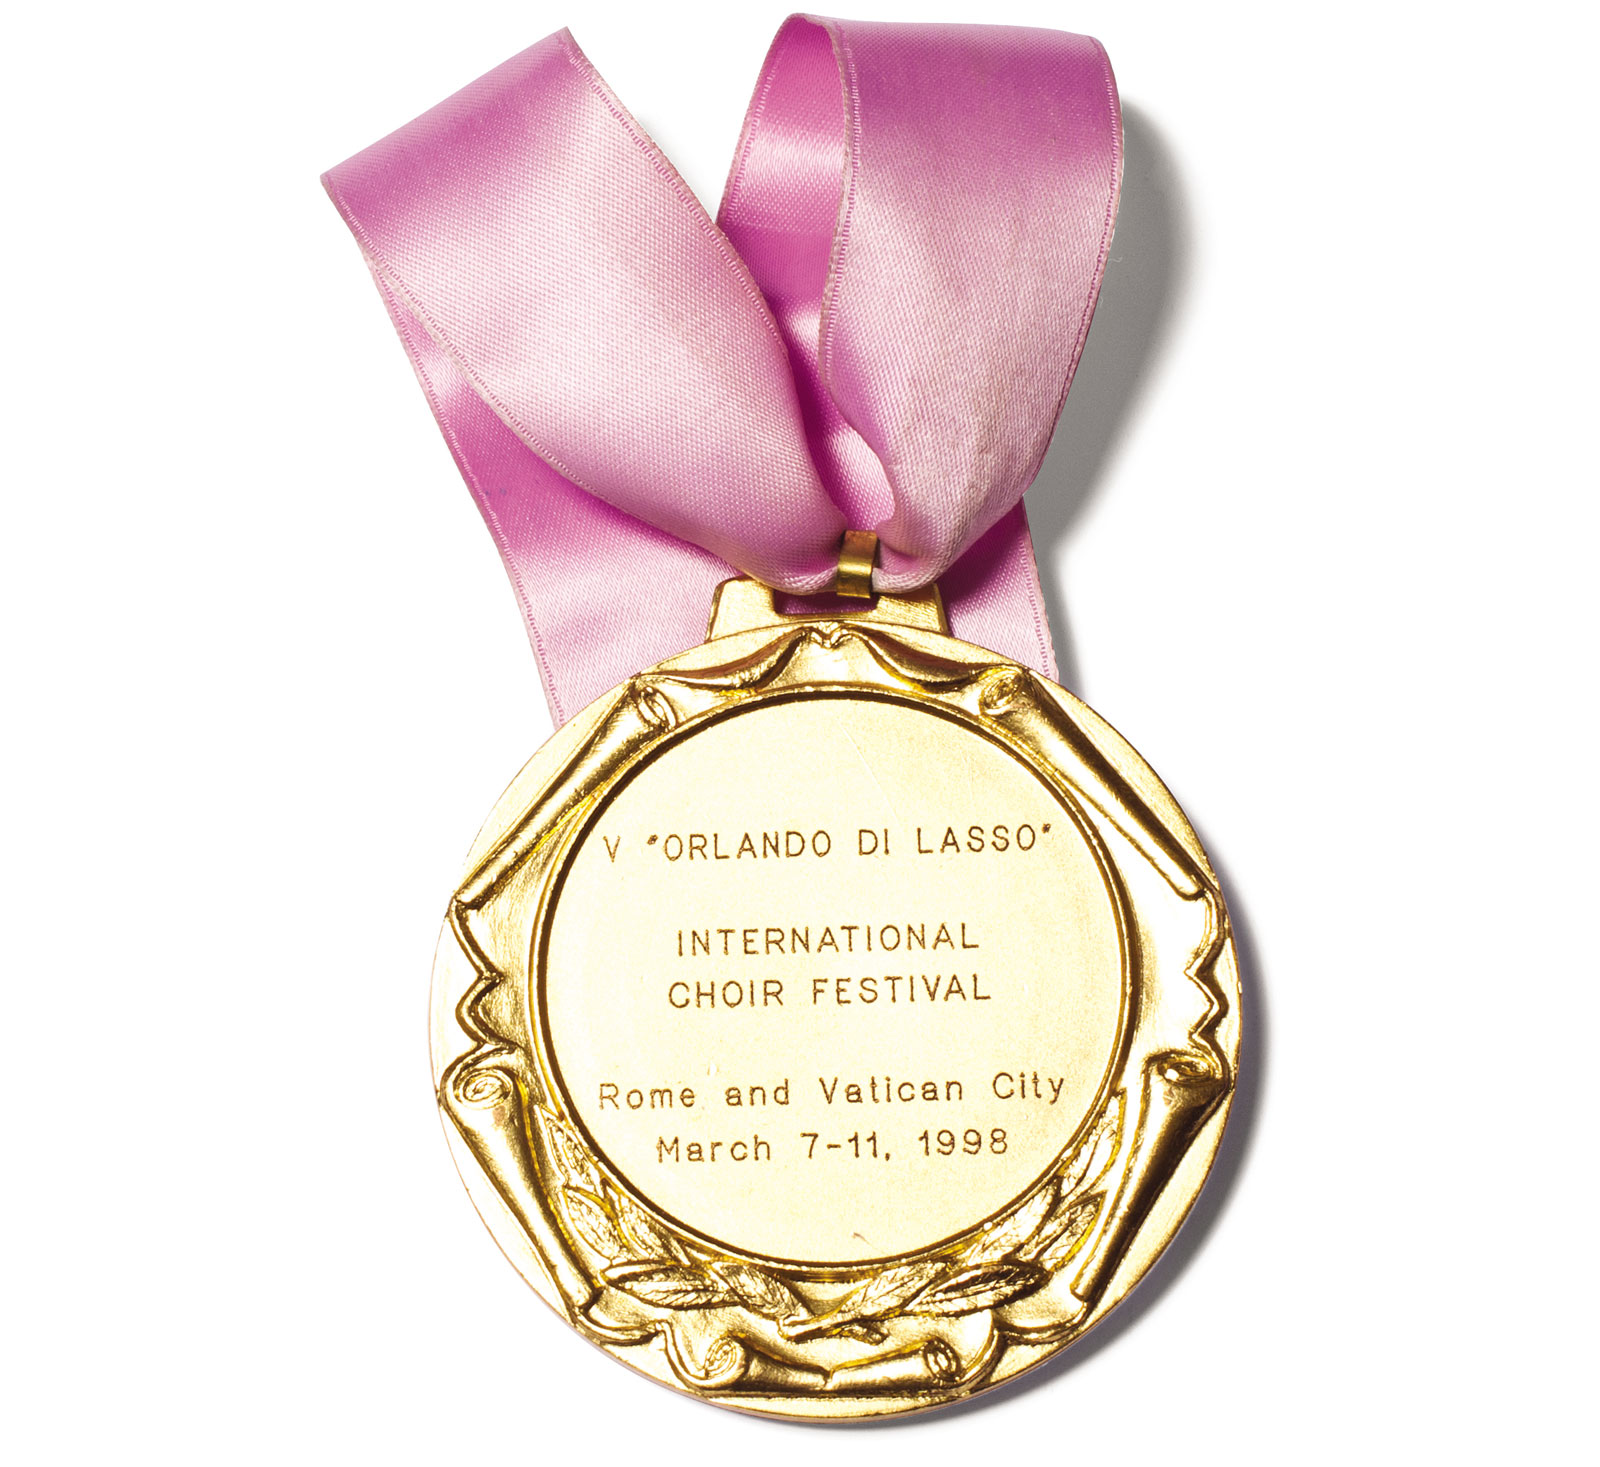 Златна медаља на Међународном хорском фестивалу ''Орландо ди Ласо'' у Риму 1998